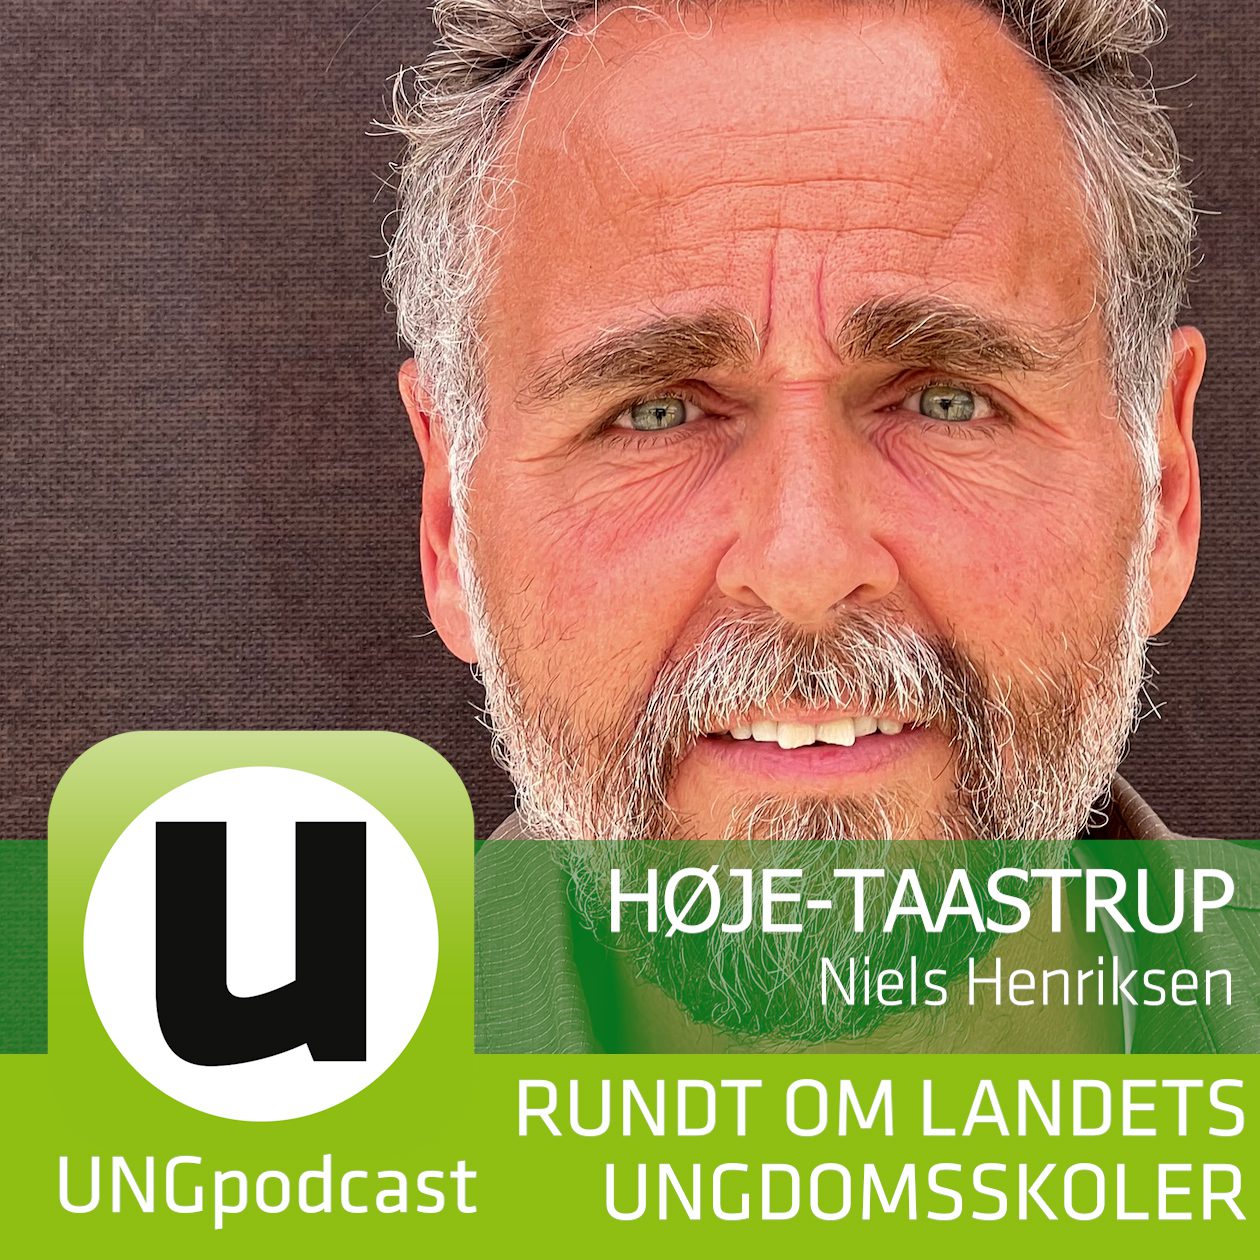 Podcast Ikon #50 Høje-Taastrup Niels Henriksen